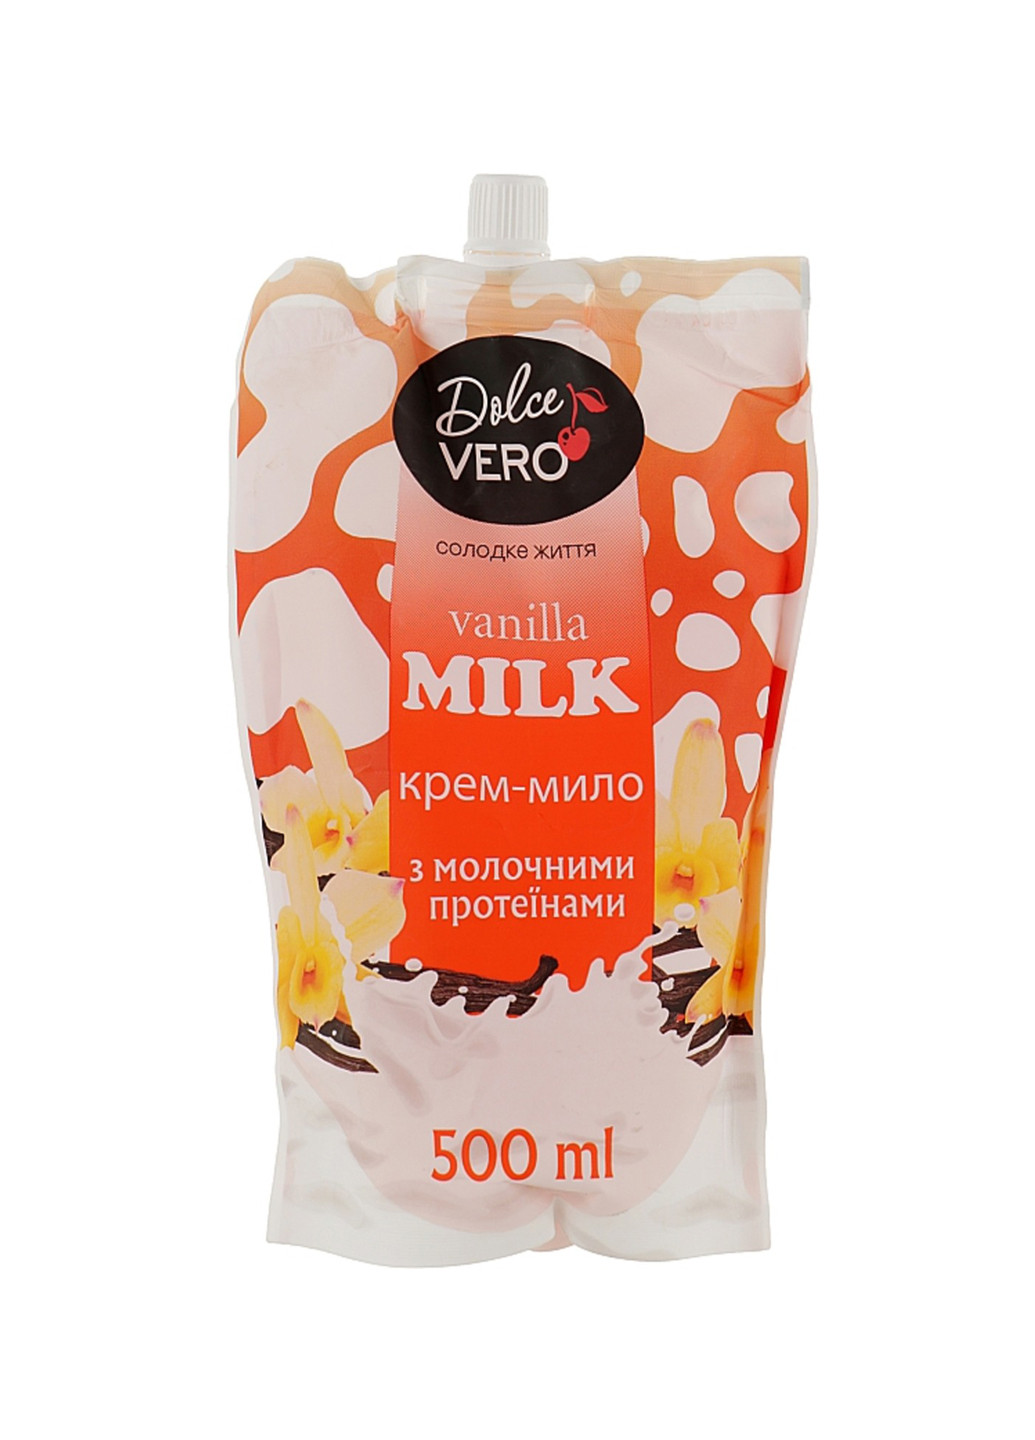 Крем-мылоТМ doy-pack VANILLA MILK с молочными протеинами 500 мл Dolce Vero 4820091146939 (256913776)